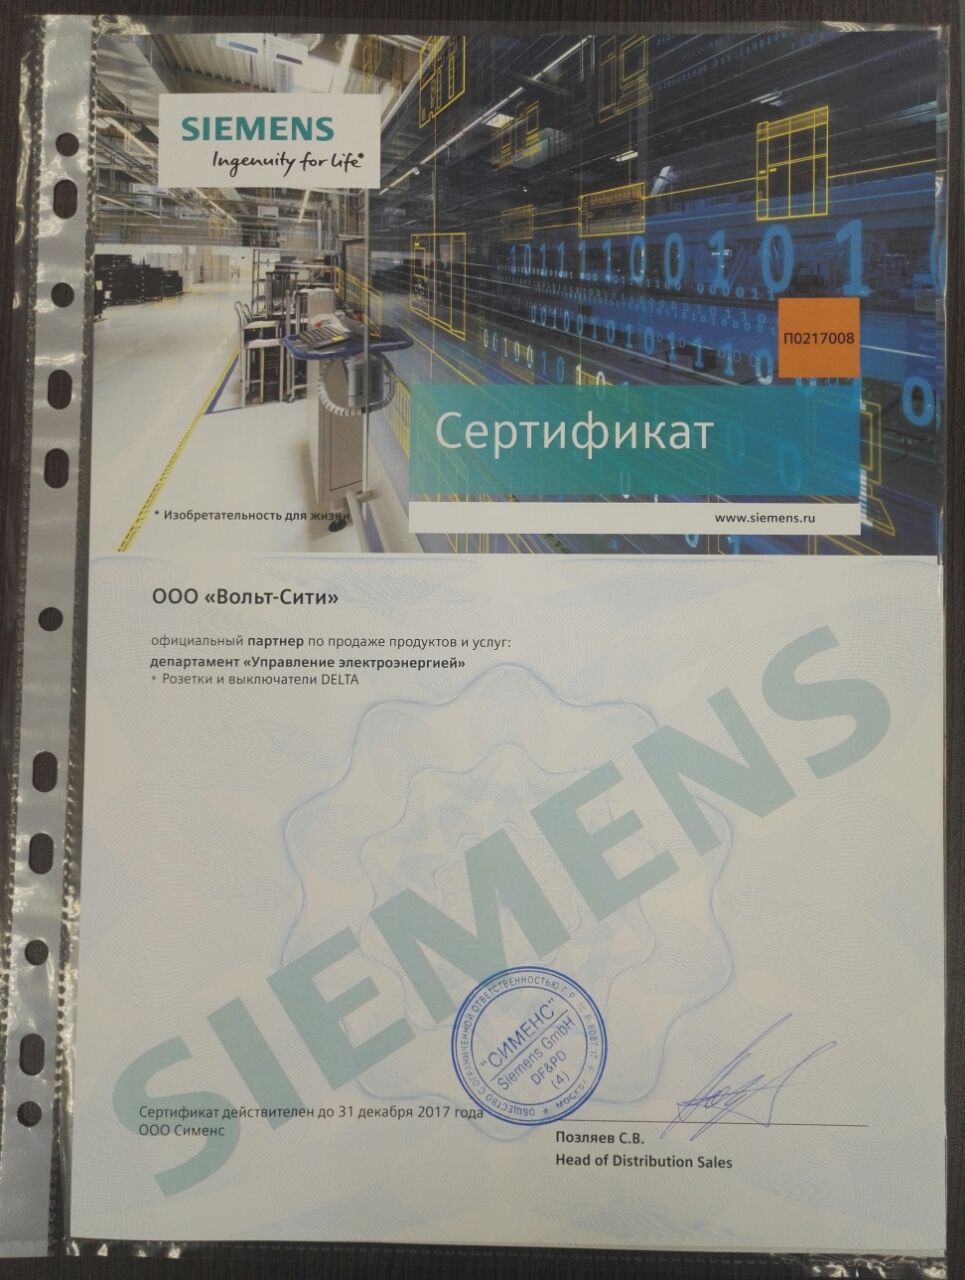 Вольт-сити уже много лет является официальным партнером концерна Siemens